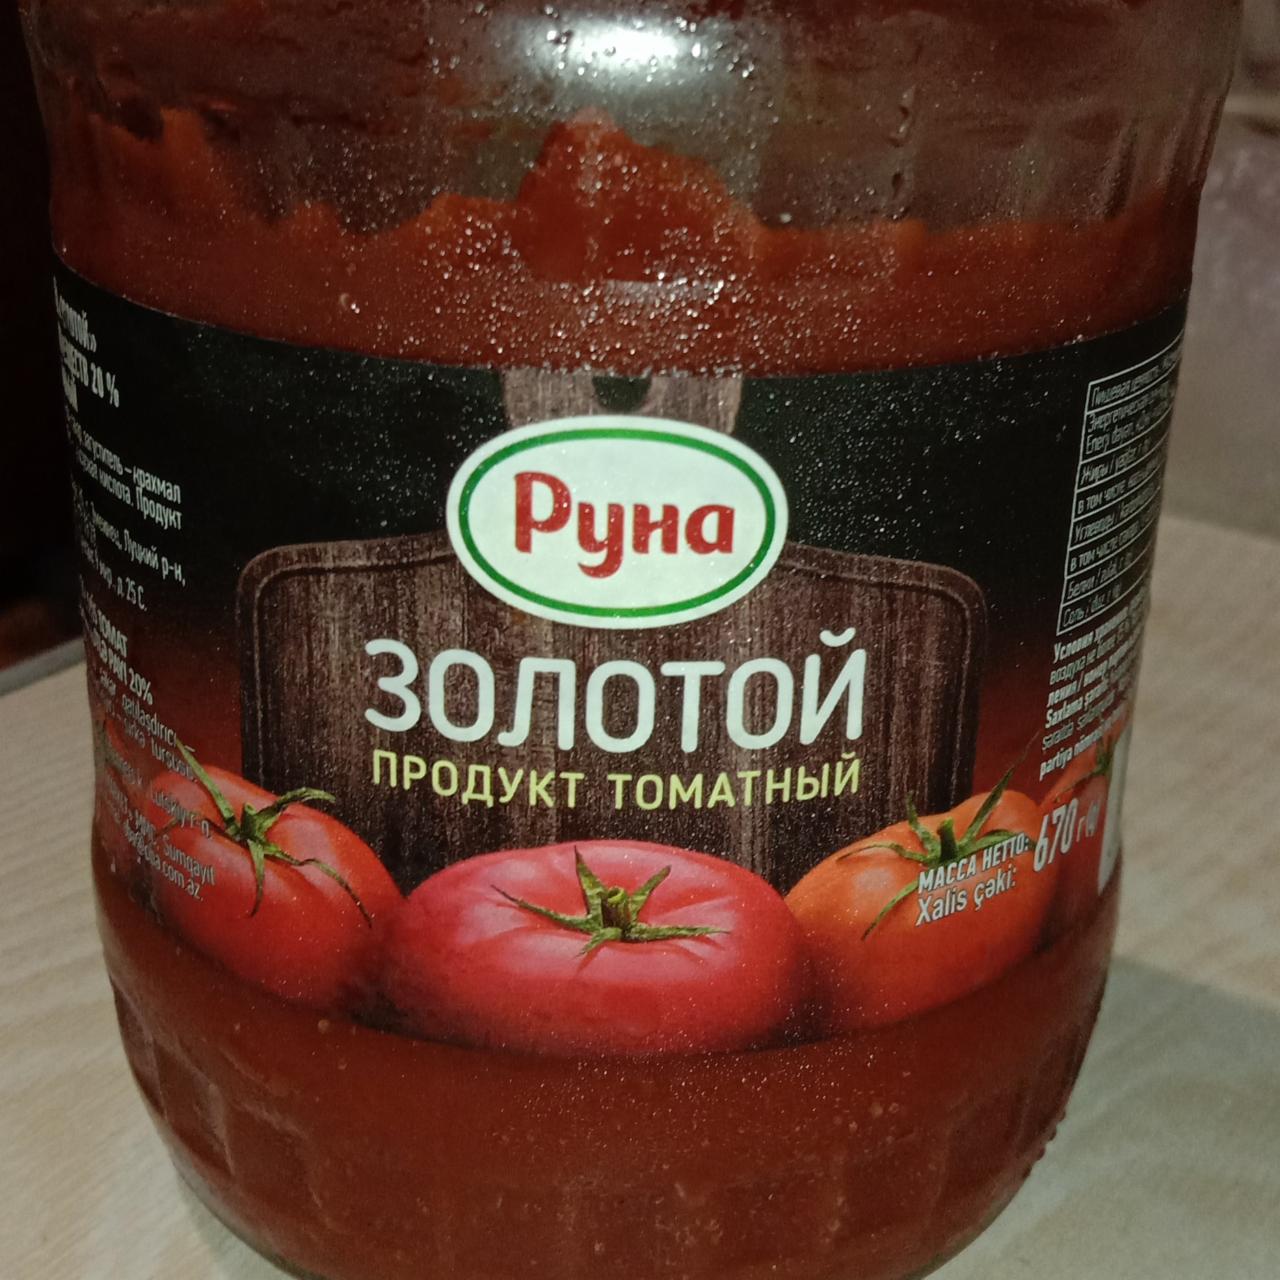 Фото - золотой продукт томатный Руна